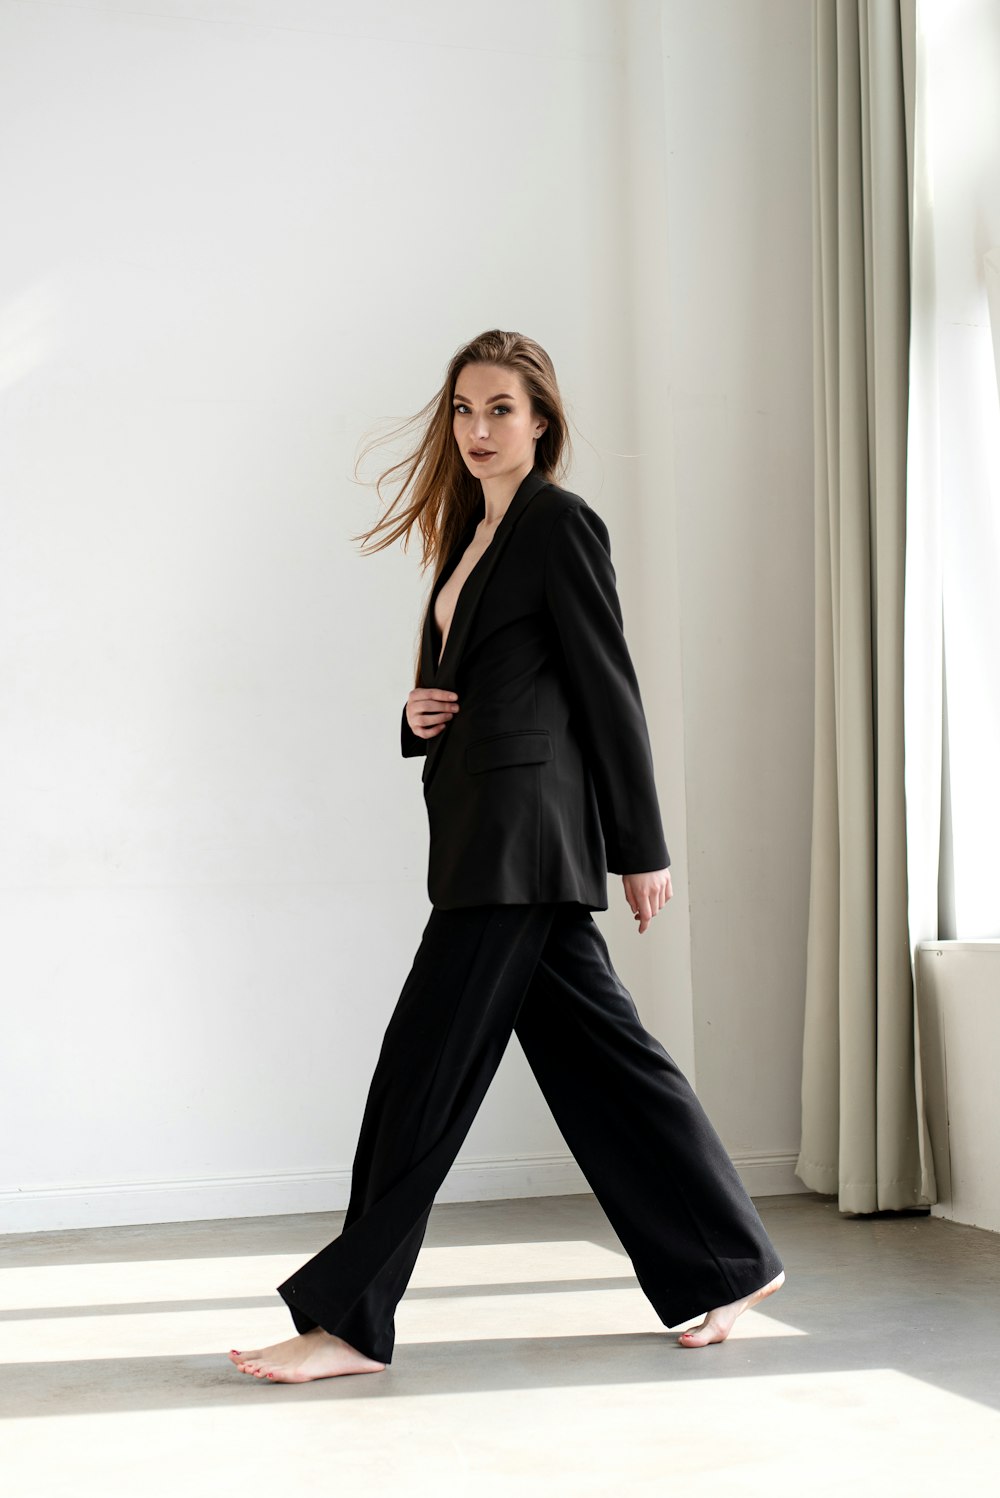 a woman in a black suit is walking